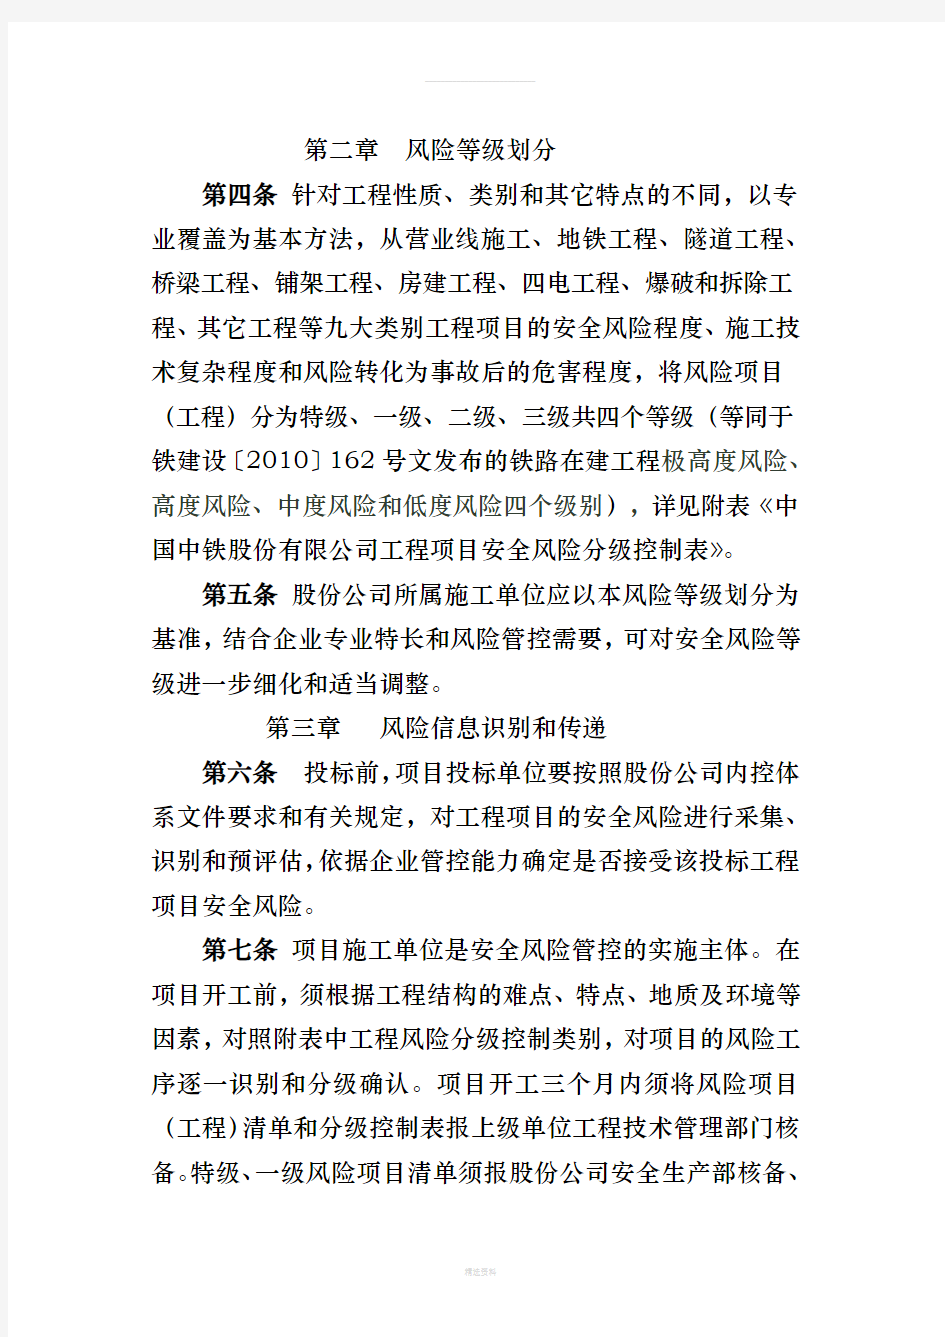 中国中铁股份有限公司工程项目安全风险分级管控指导意见(试行)